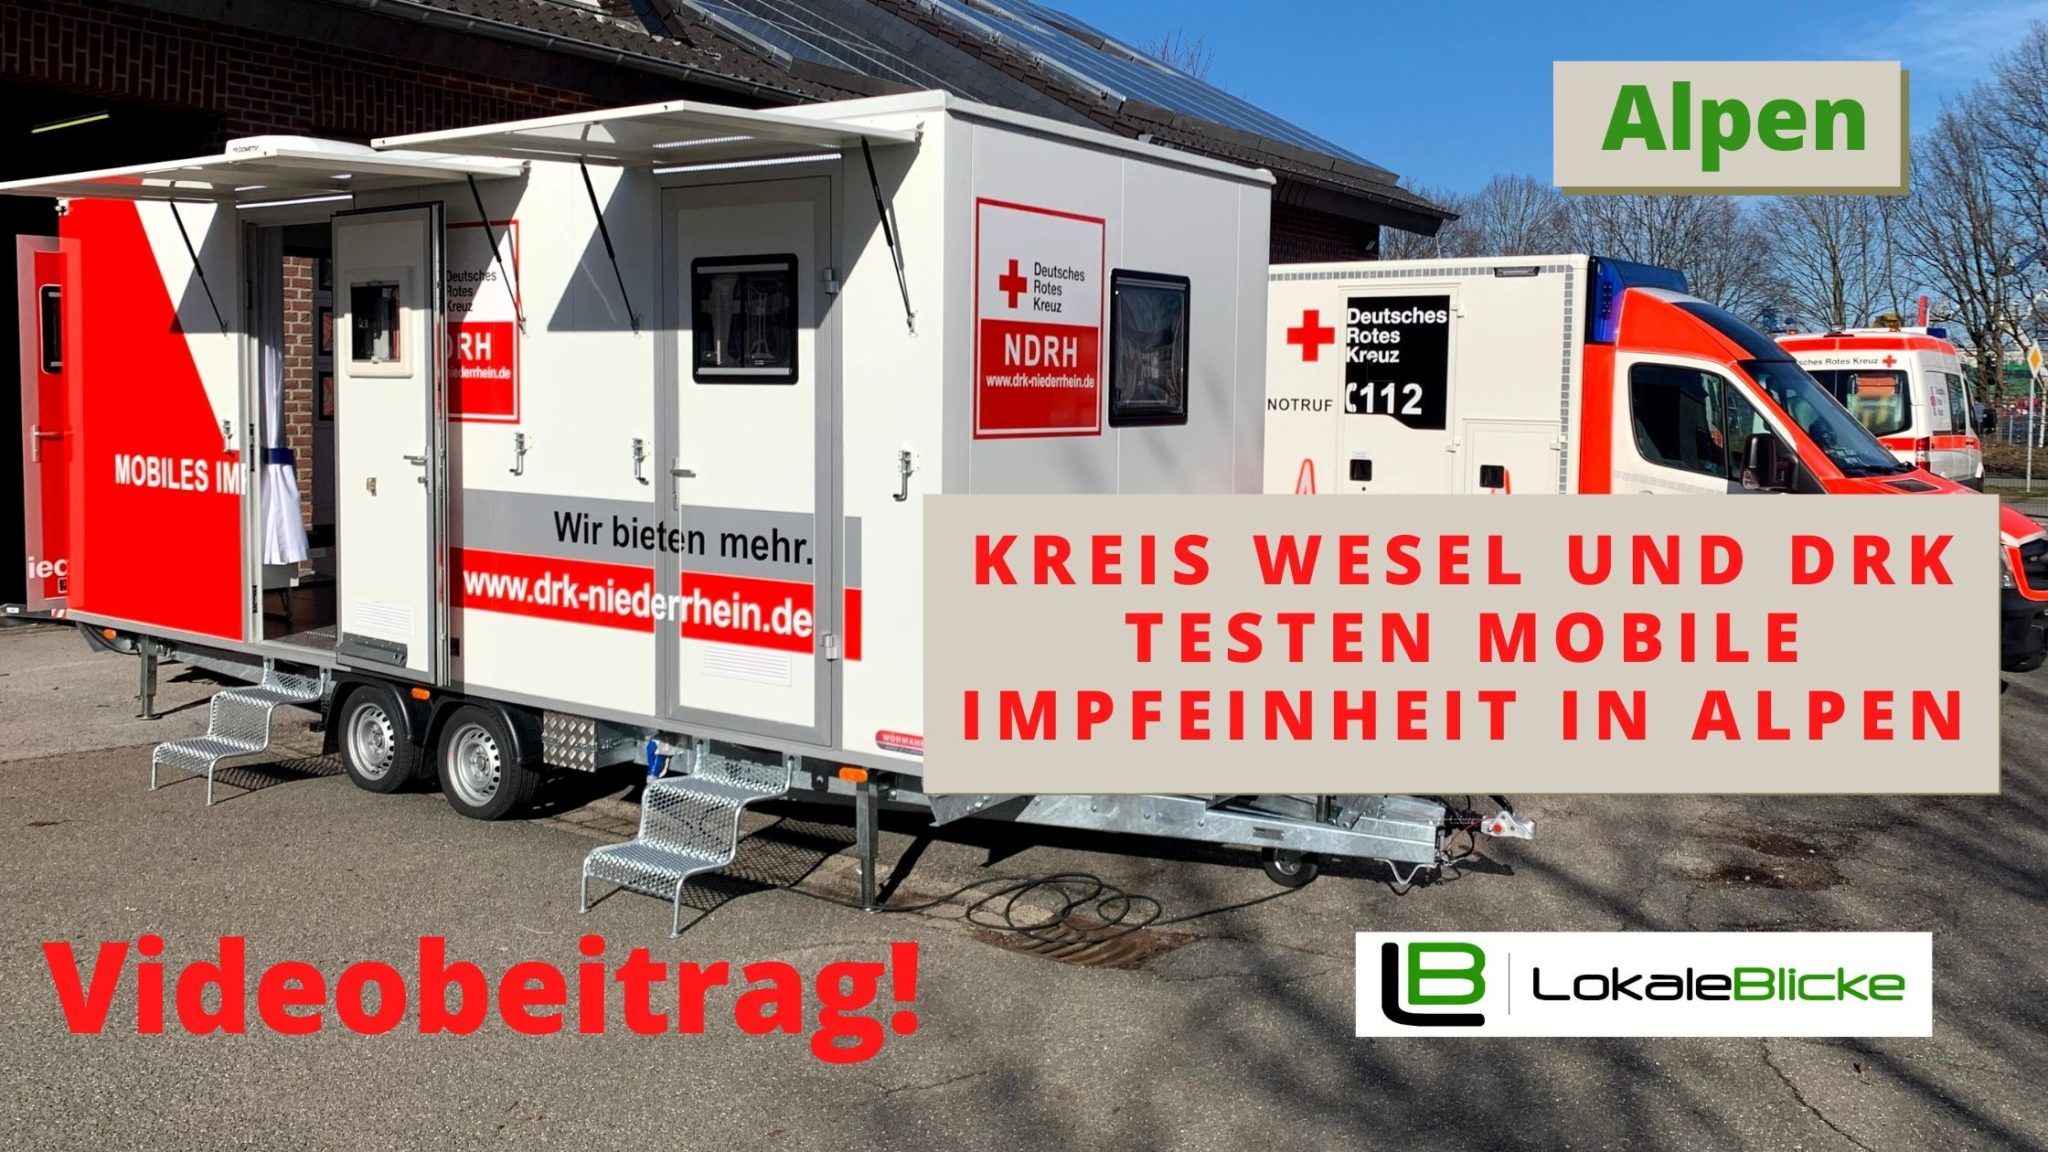 Kreis Wesel und DRK testen mobile Impfeinheit in Alpen